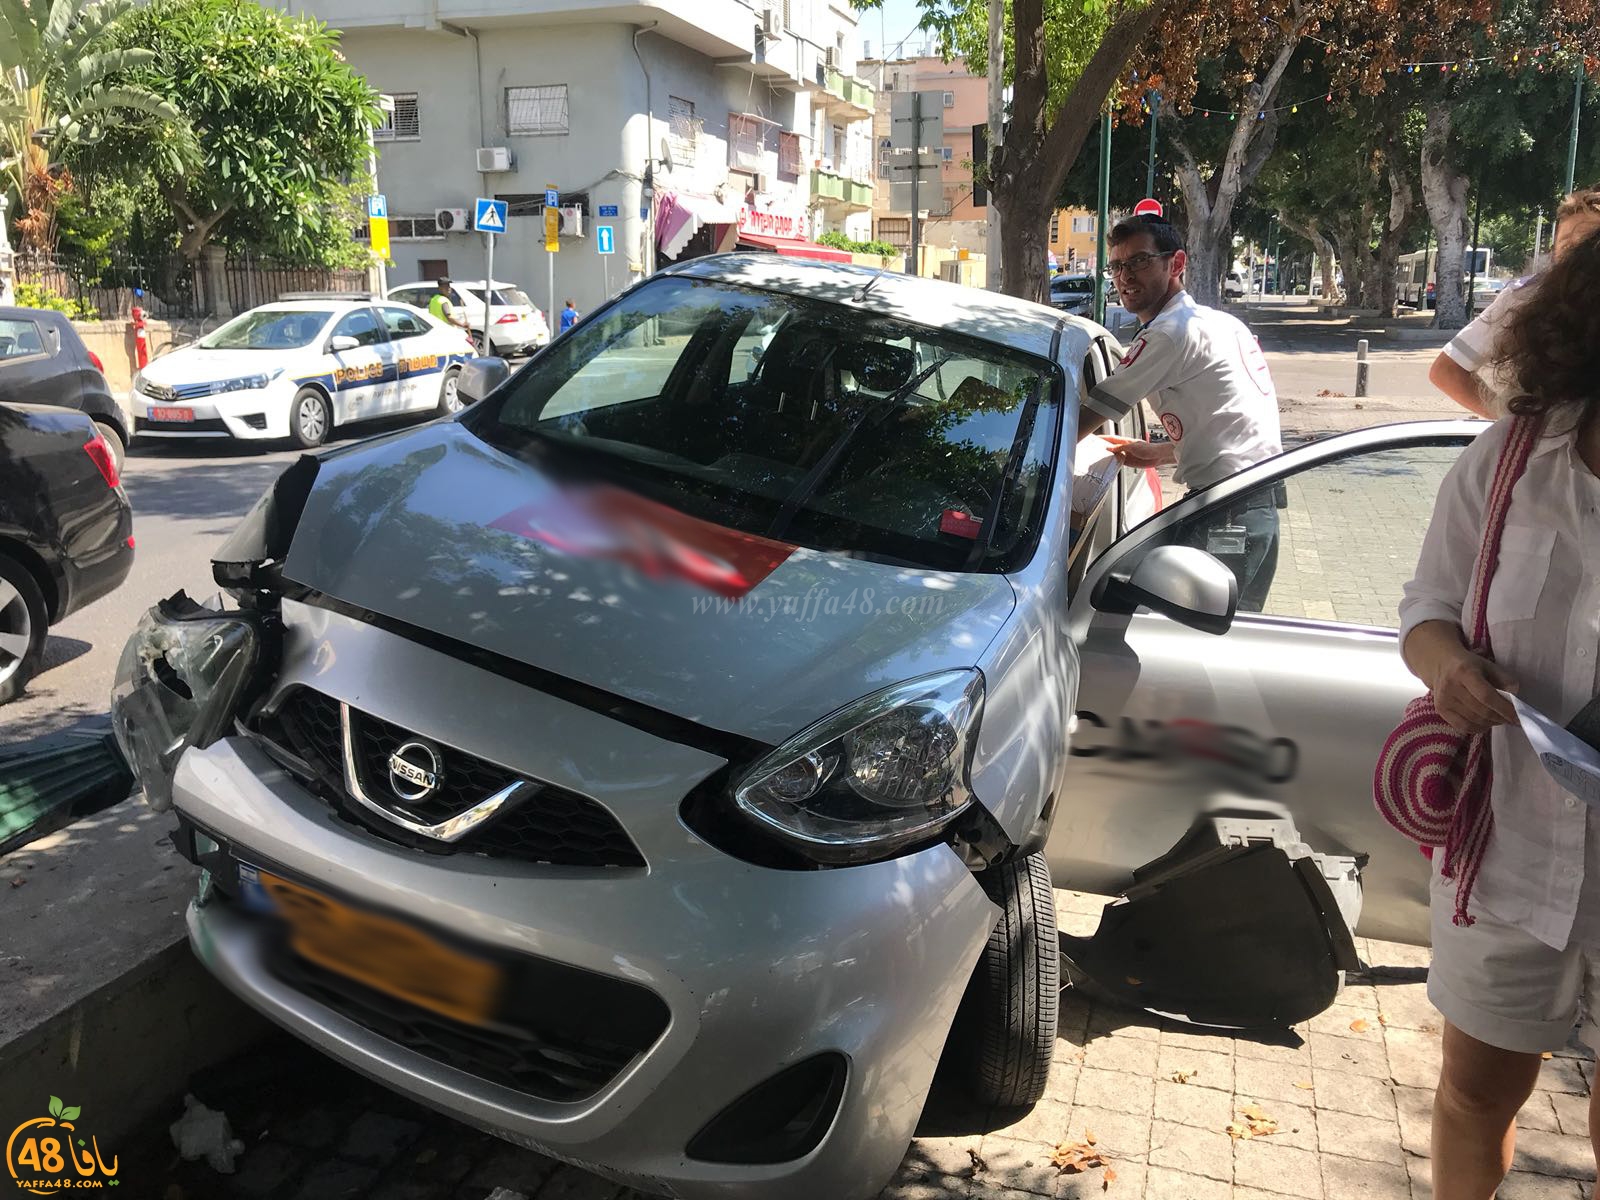  بالصور: حادث طرق ذاتي في مدينة يافا دون اصابات 